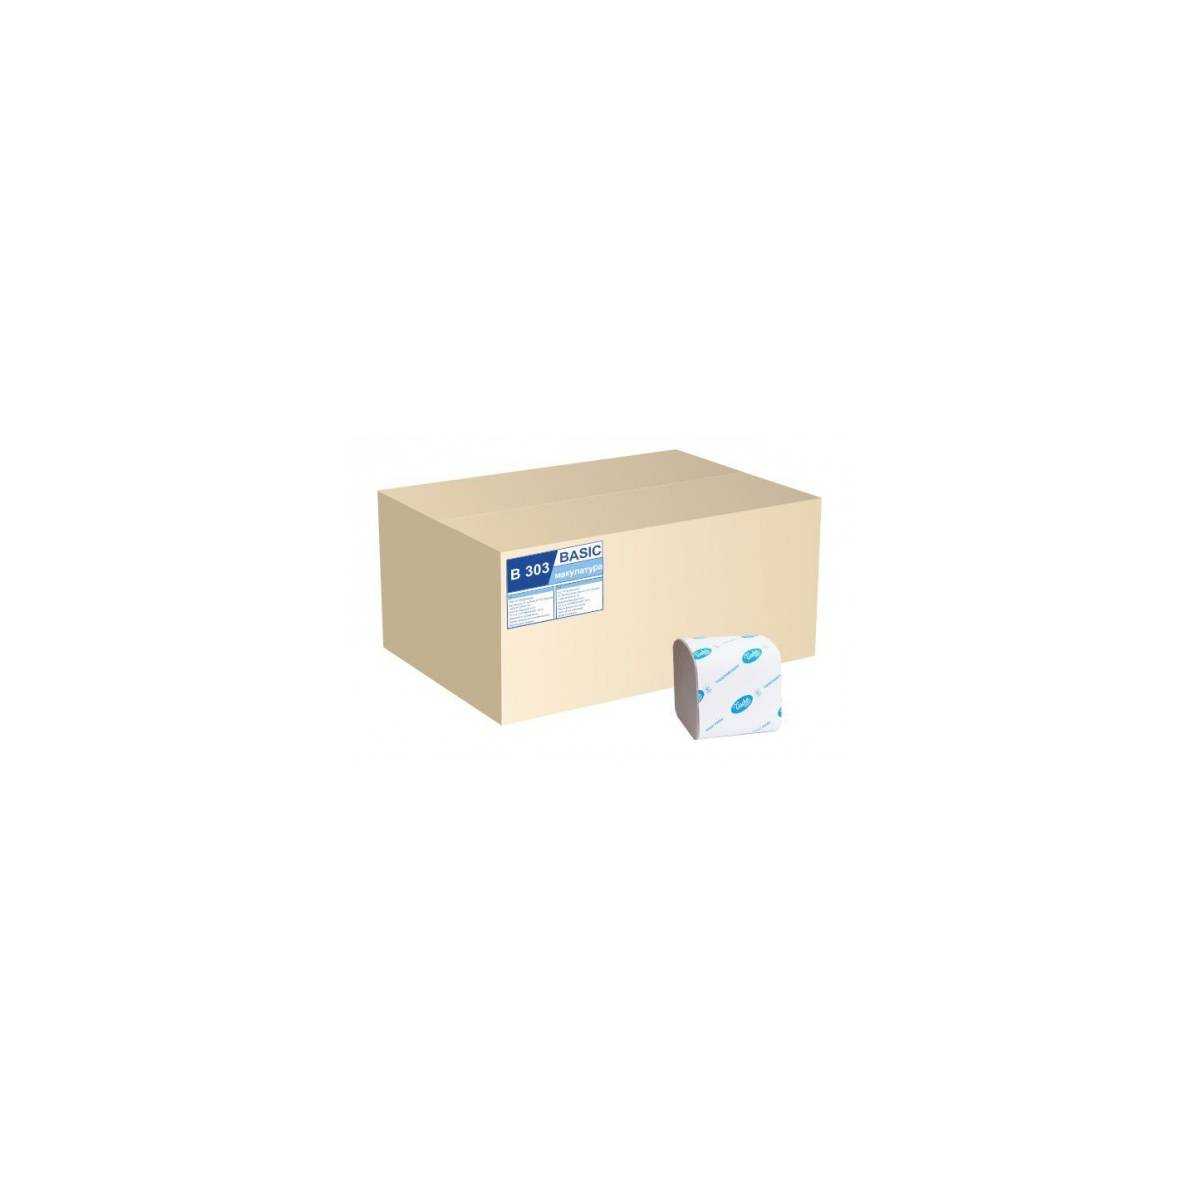 Туалетная бумага в пачке BASIC (ящик/40 пачек по 200 листов) В303 Tischa Papier